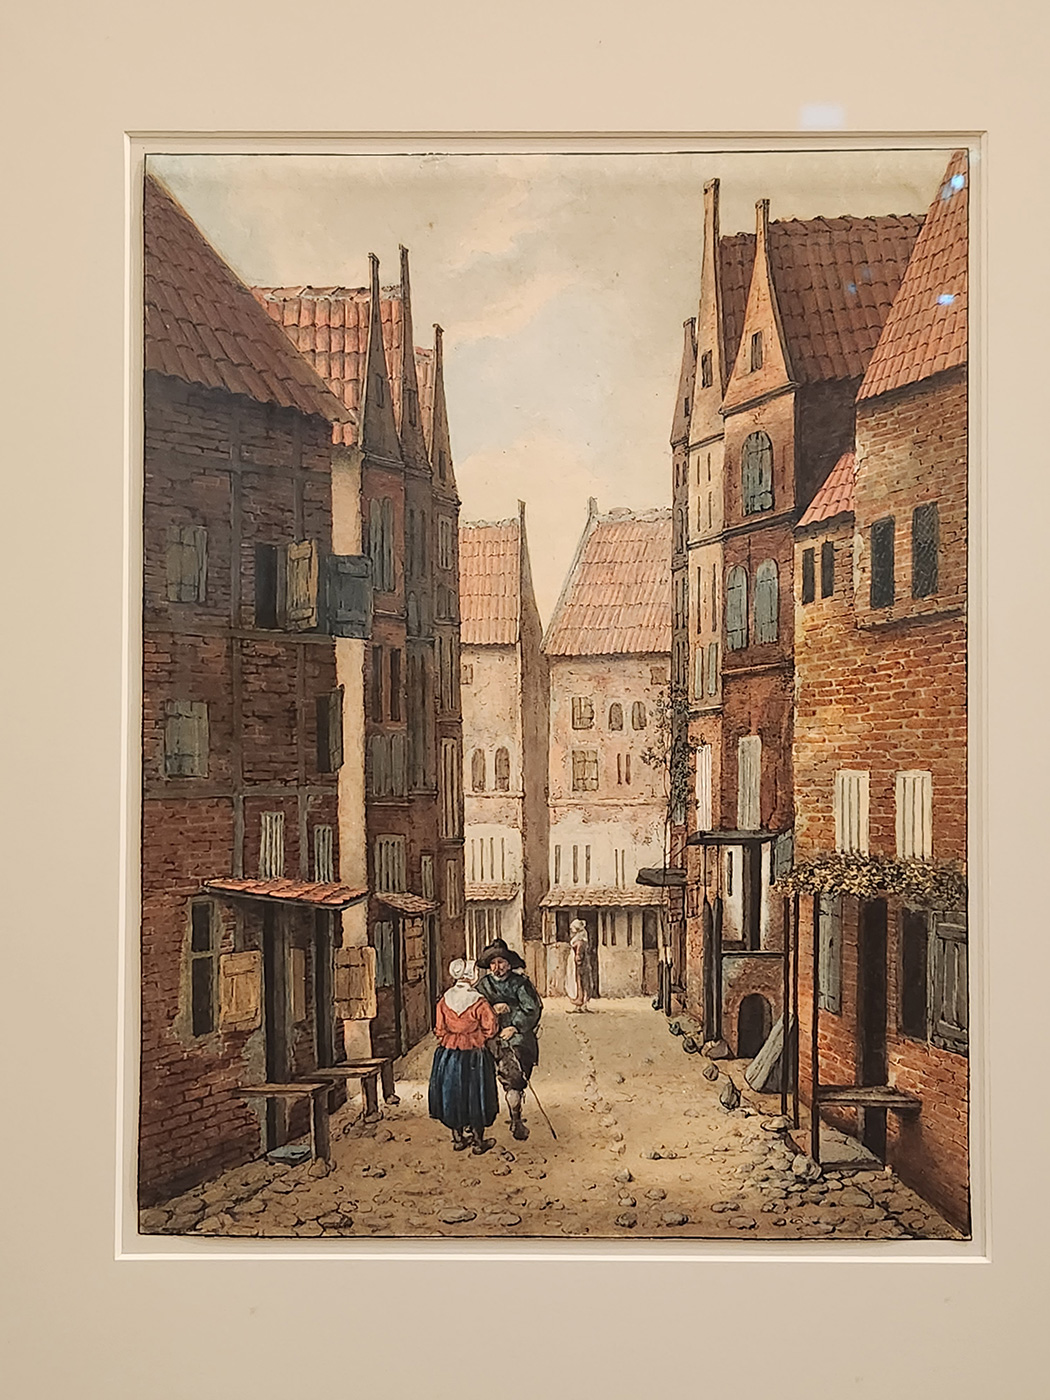 (3) Scène de rue, un homme et une femme discutant. Aquarelle sur papier d’Albertus Brondgeest pensant reproduire un Vermeer 360 x 273mm d’après un tableau de Jacobus Vrel. Delft Archives municipales.